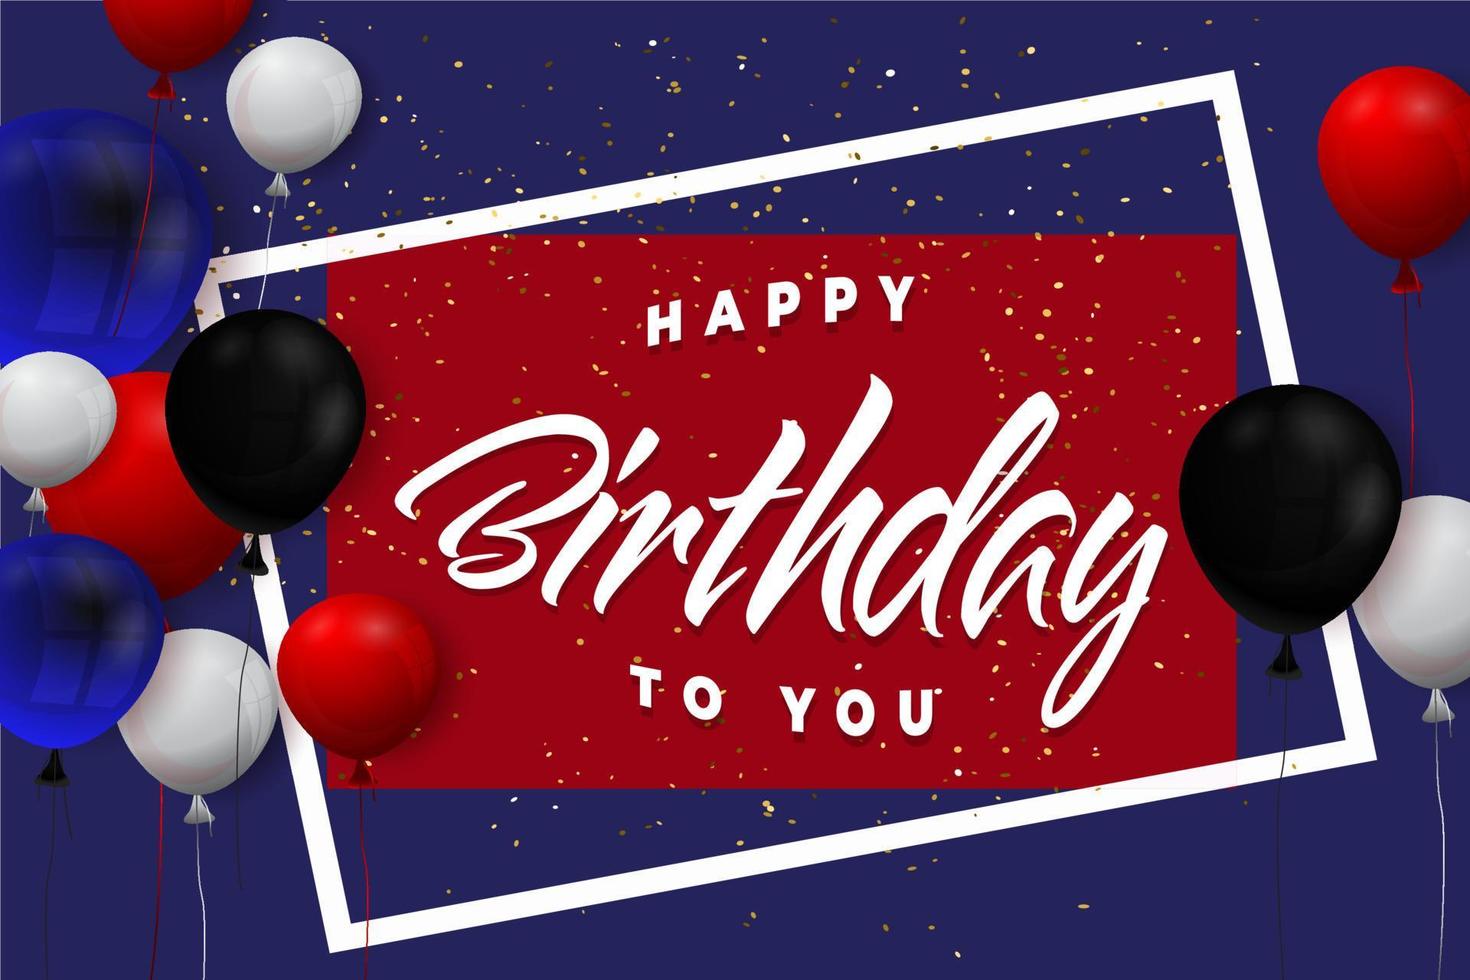 aniversário com vetor livre de fundo de balão colorido realista. fundo de balão 3d realista para vetor livre de cartaz de cartão de promoção de aniversário de feriado de festa.